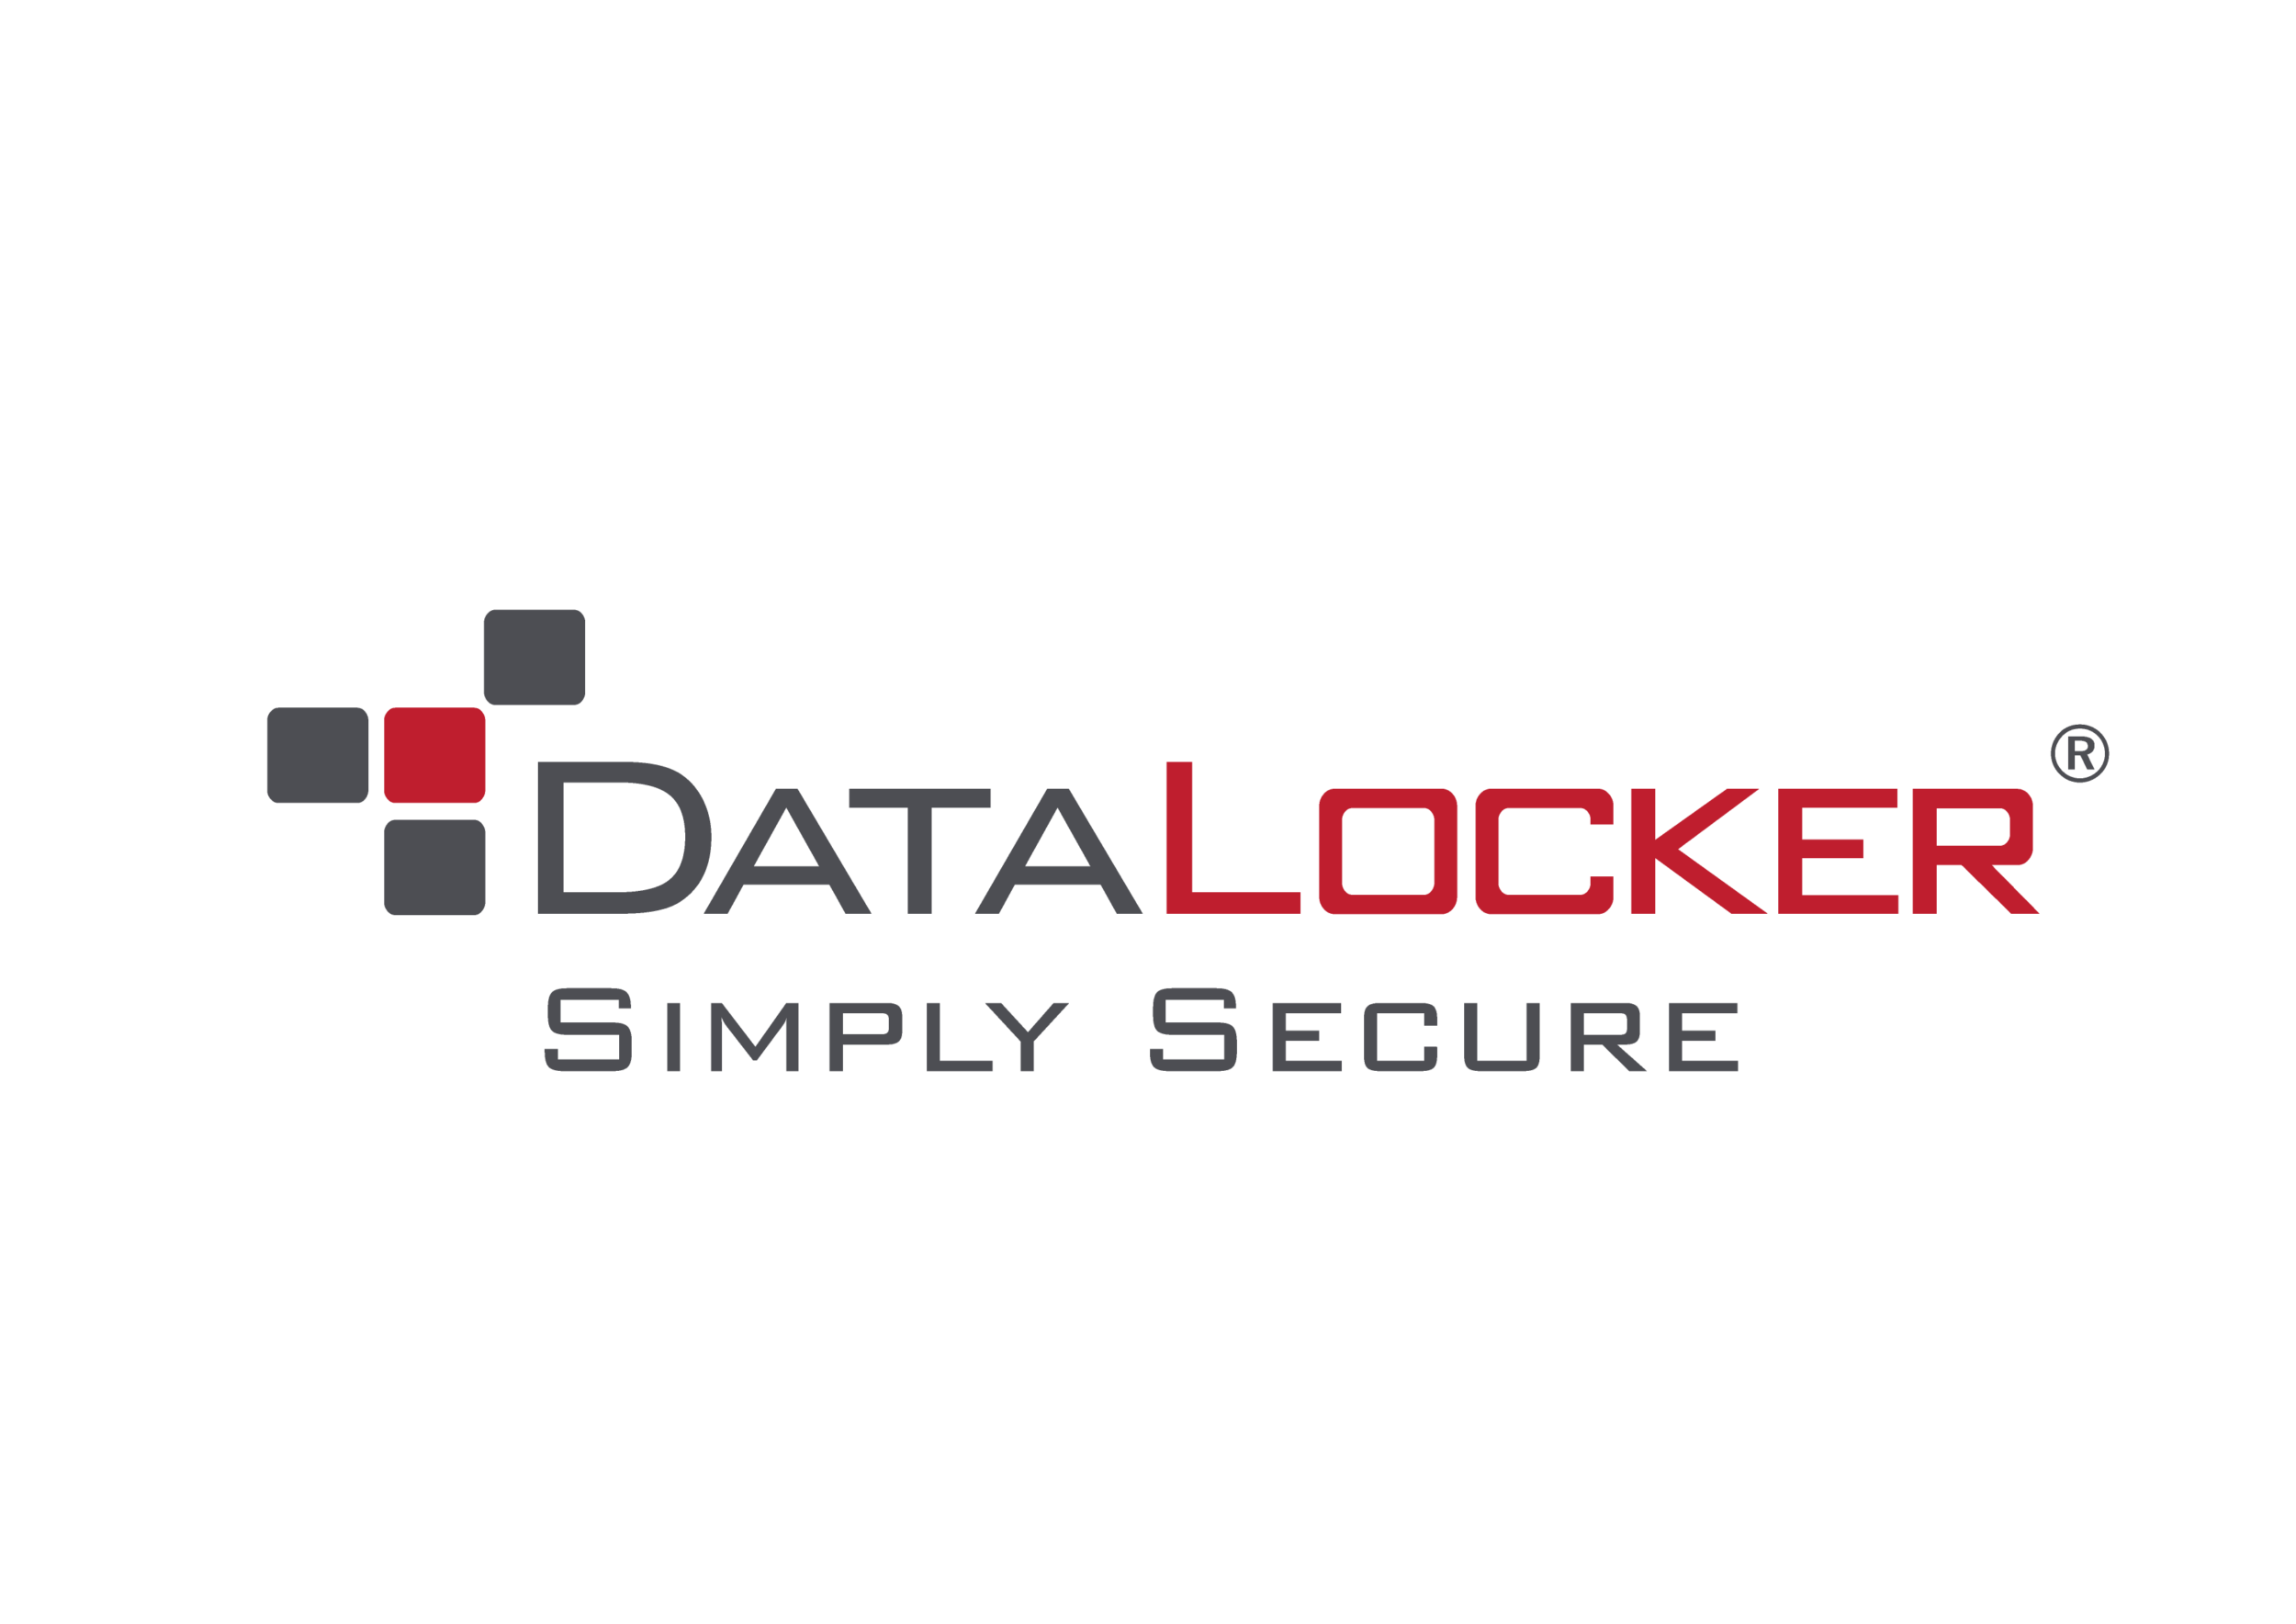 DataLocker encryption solutions